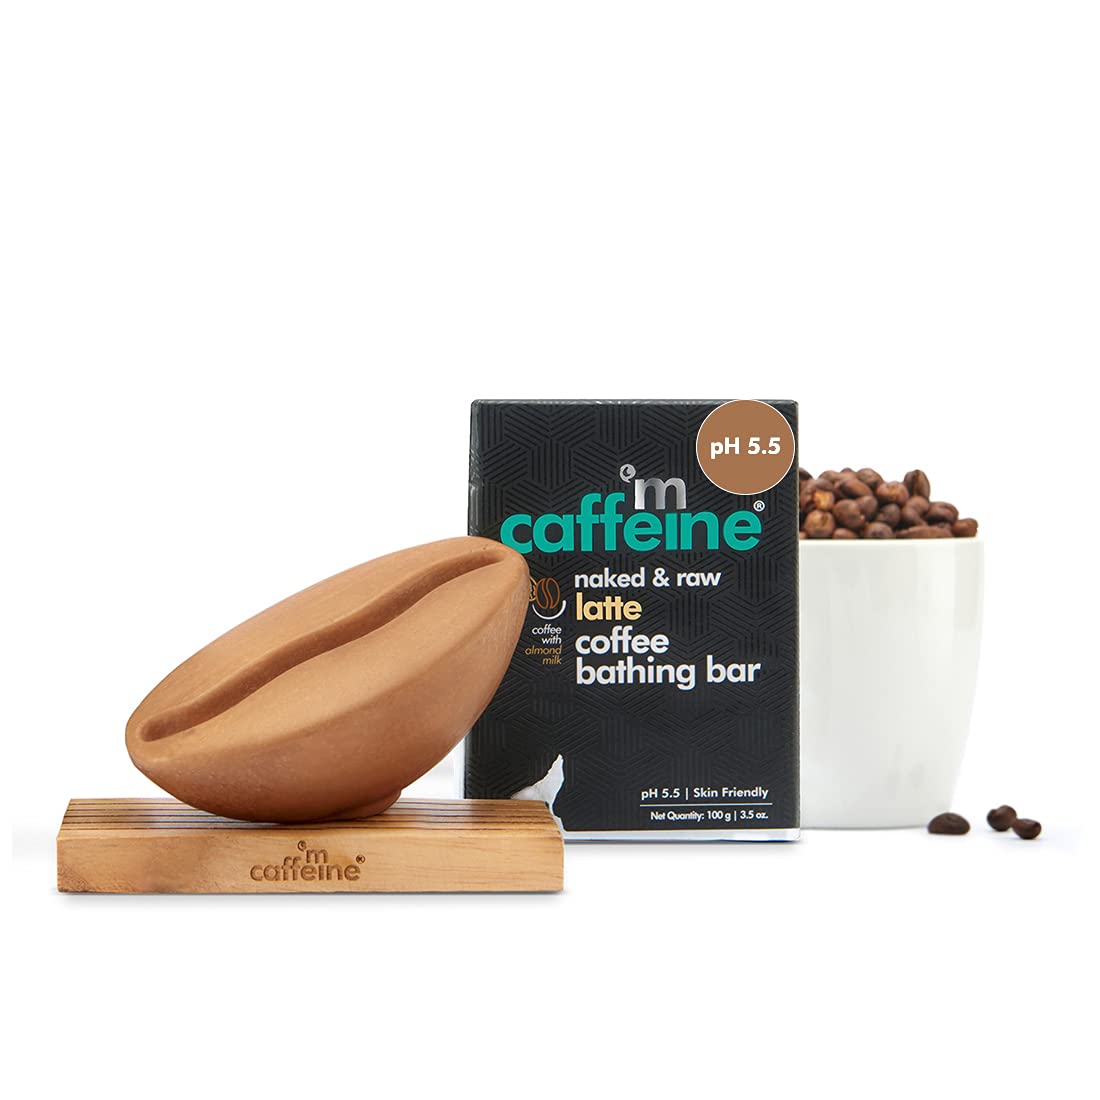 mCaffeine Latte Coffee Bathing Bar (100 g)